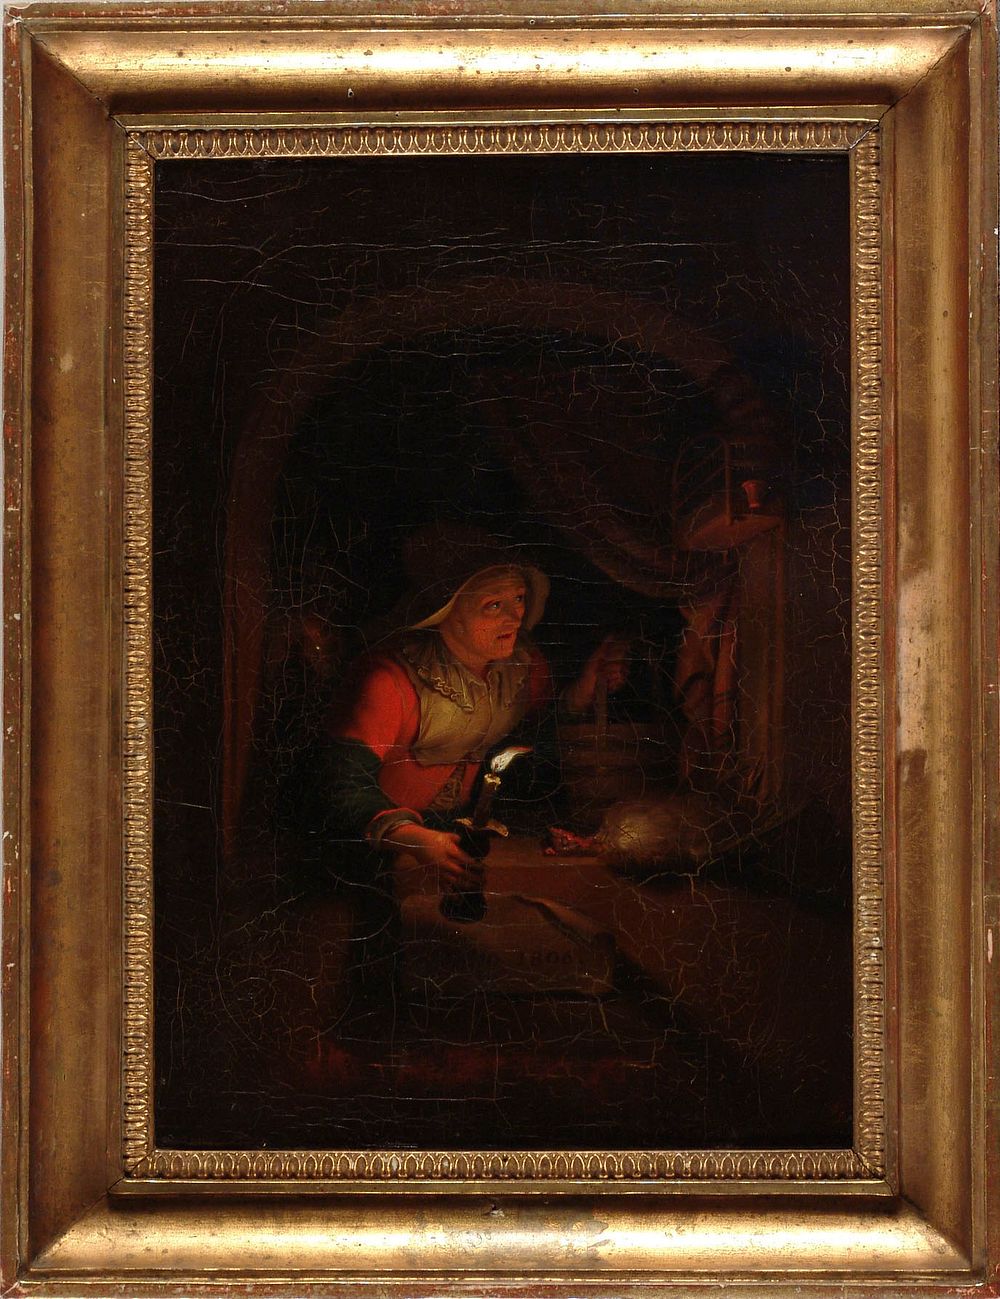 Vanha nainen ja kynttila, kopio godfried schalckenin mukaan, 1806